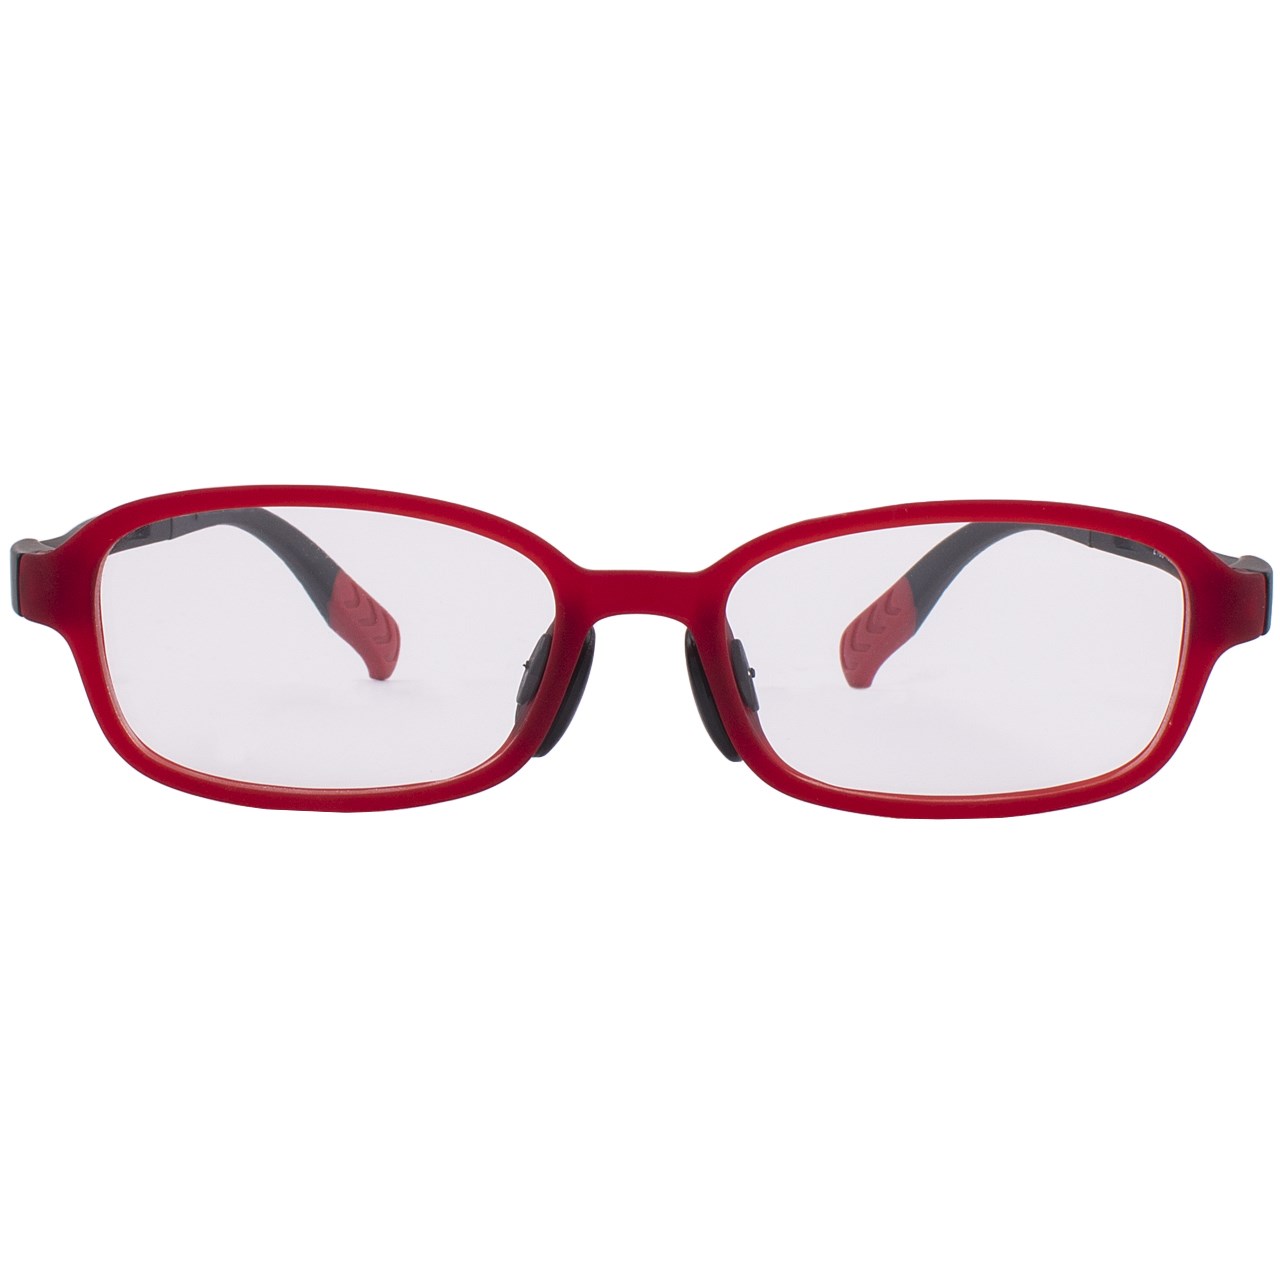 فریم عینک بچگانه واته مدل 2100C7